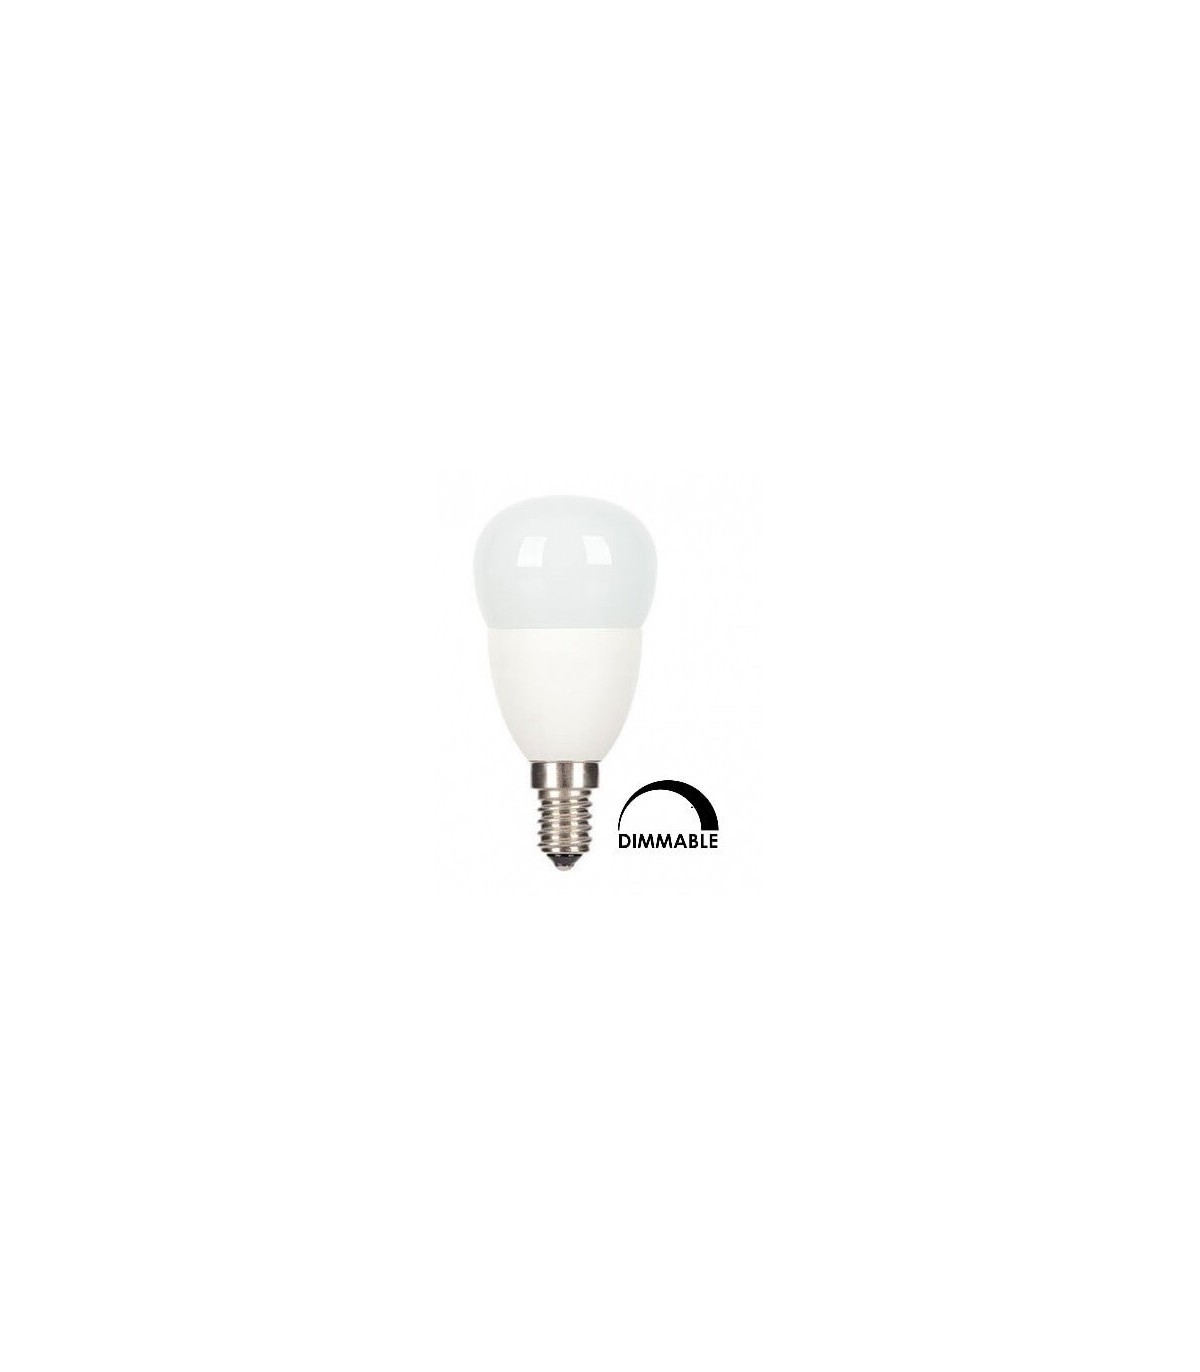 Éclairez votre maison comme jamais avec nos ampoules LED compactes